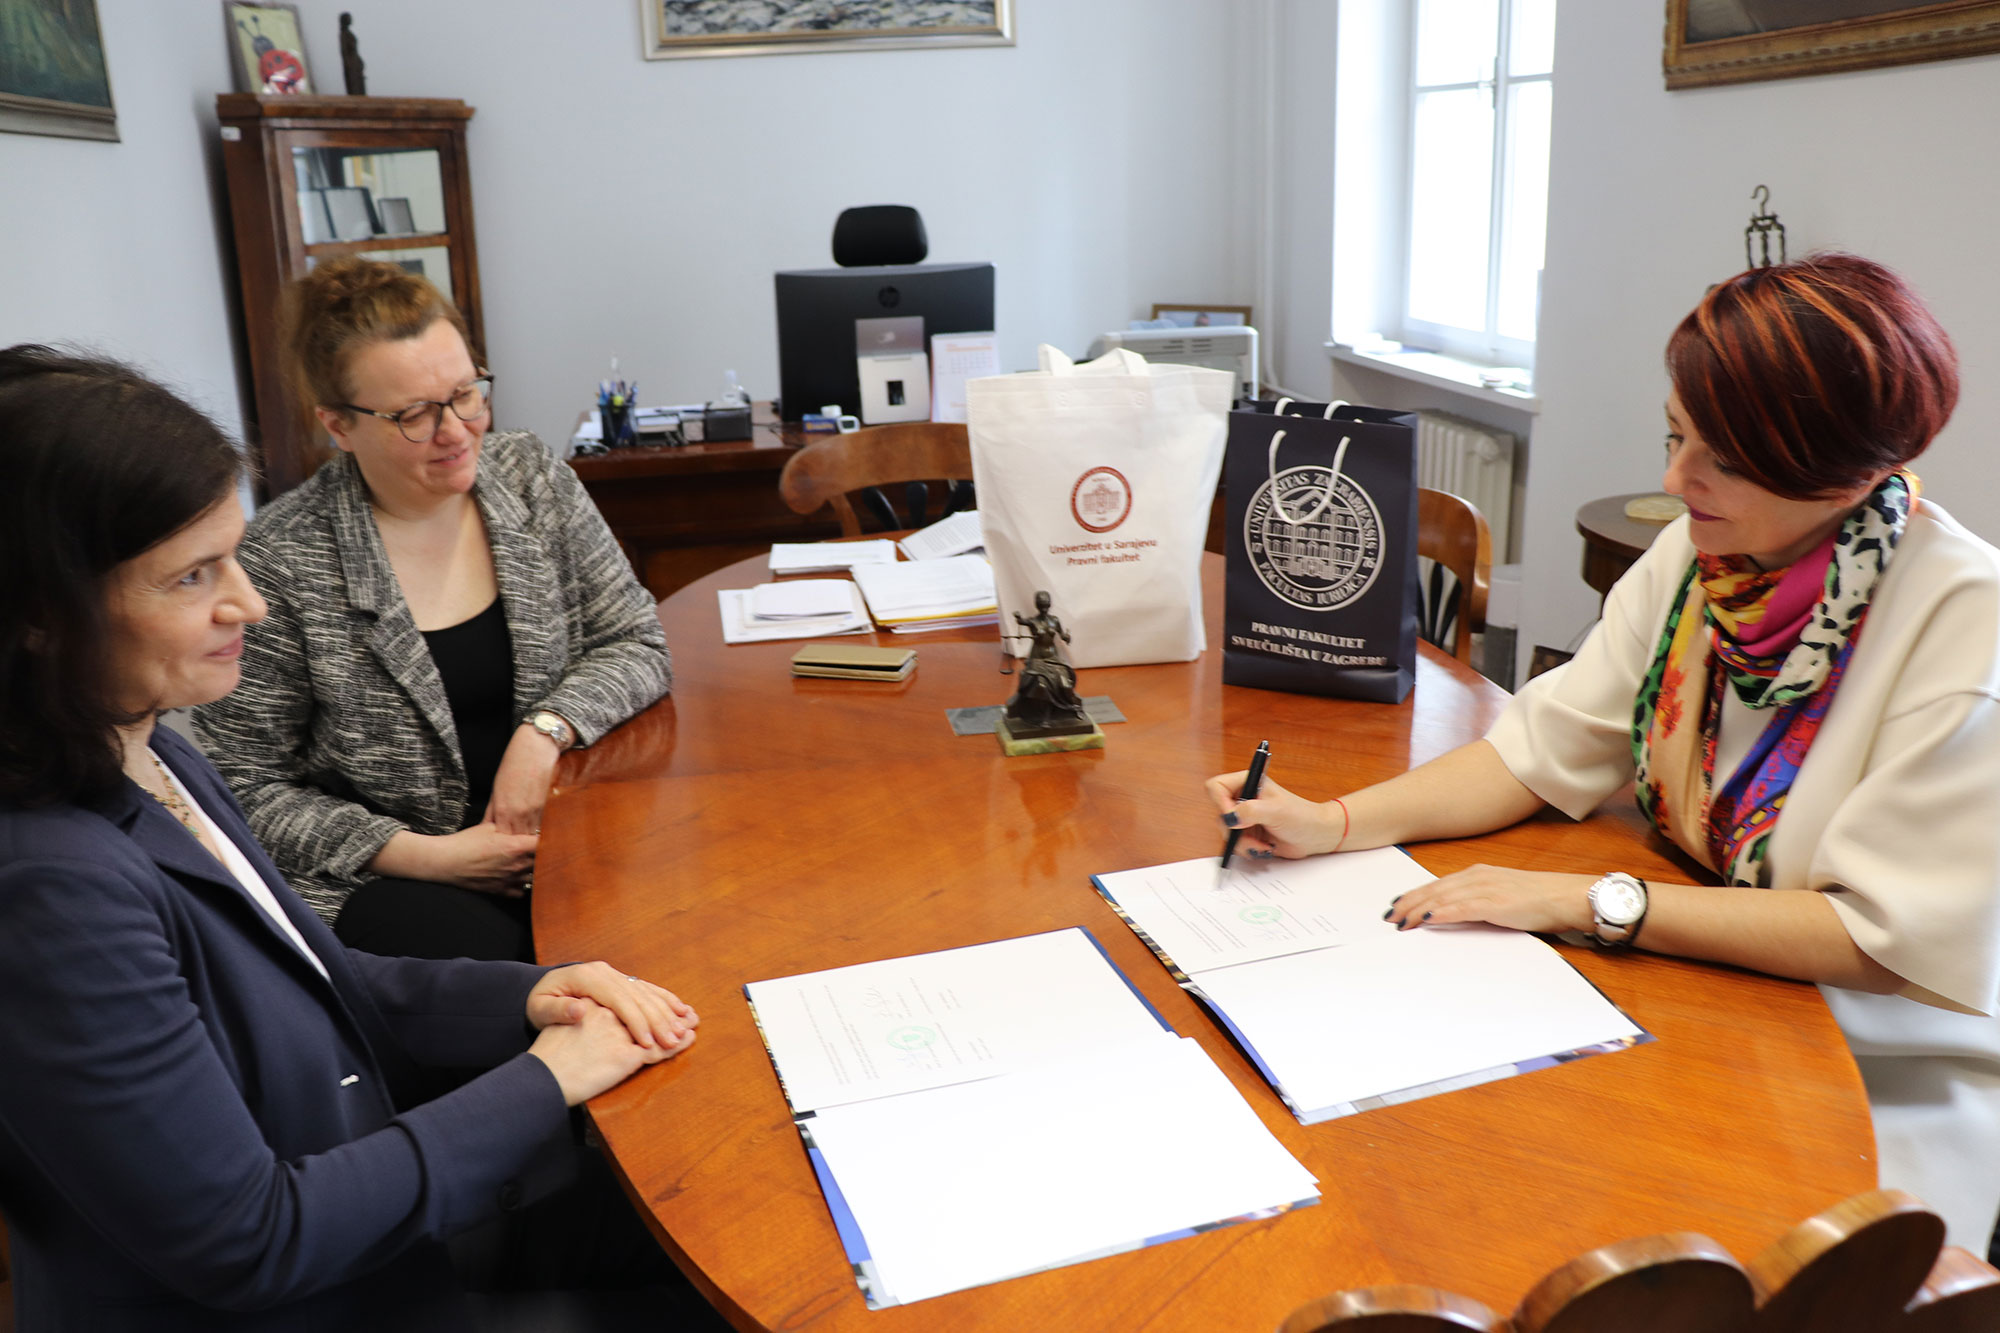 Potpisan je sporazum o suradnji s Pravnim fakultetom Univerziteta u Sarajevu